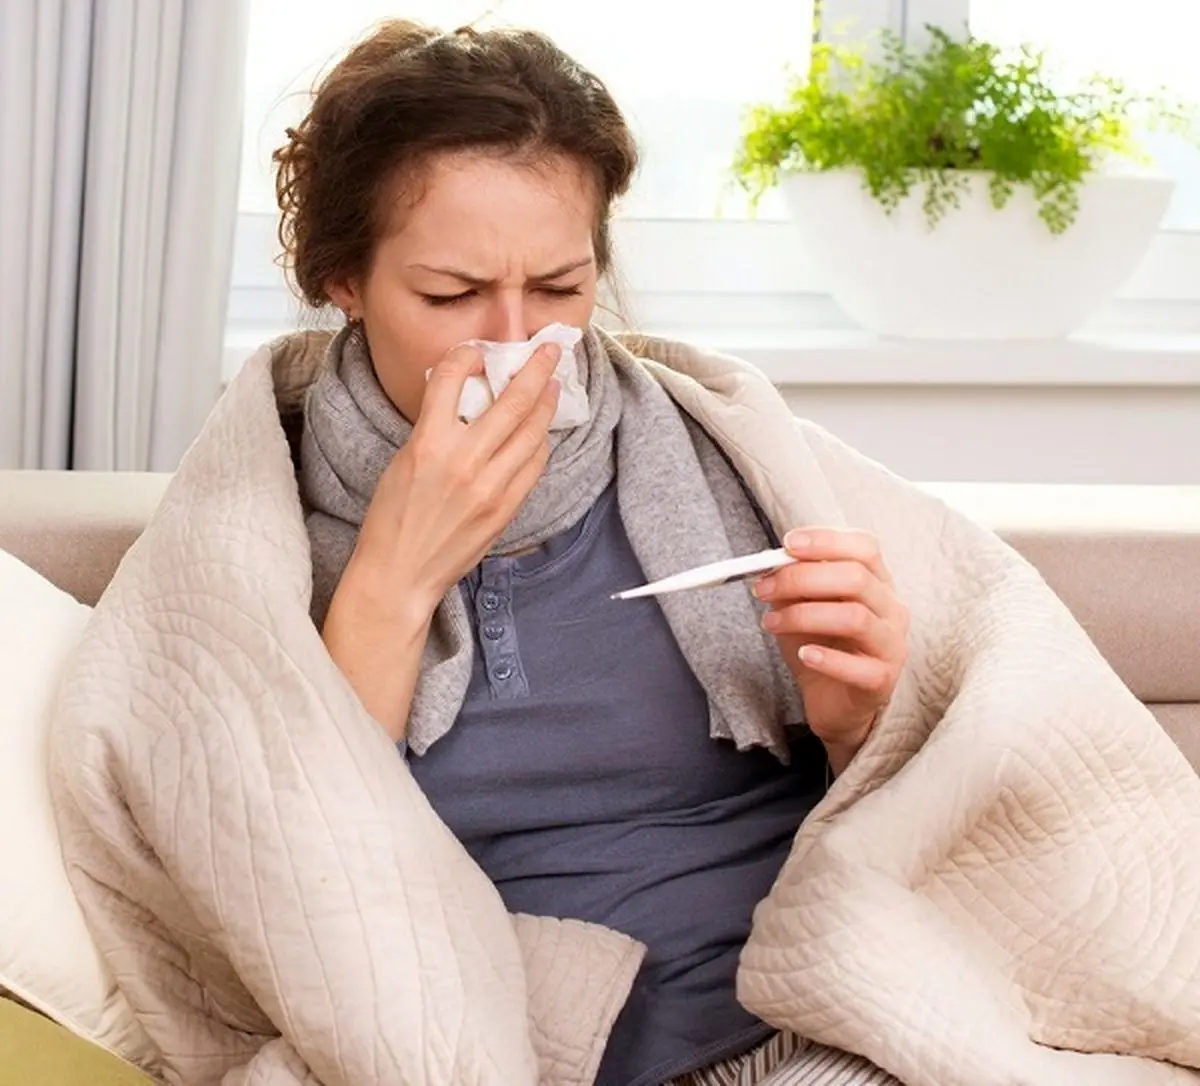  درمان سرماخوردگی بدون قرص و دکتر | این راهکار سریع را انجام دهید 